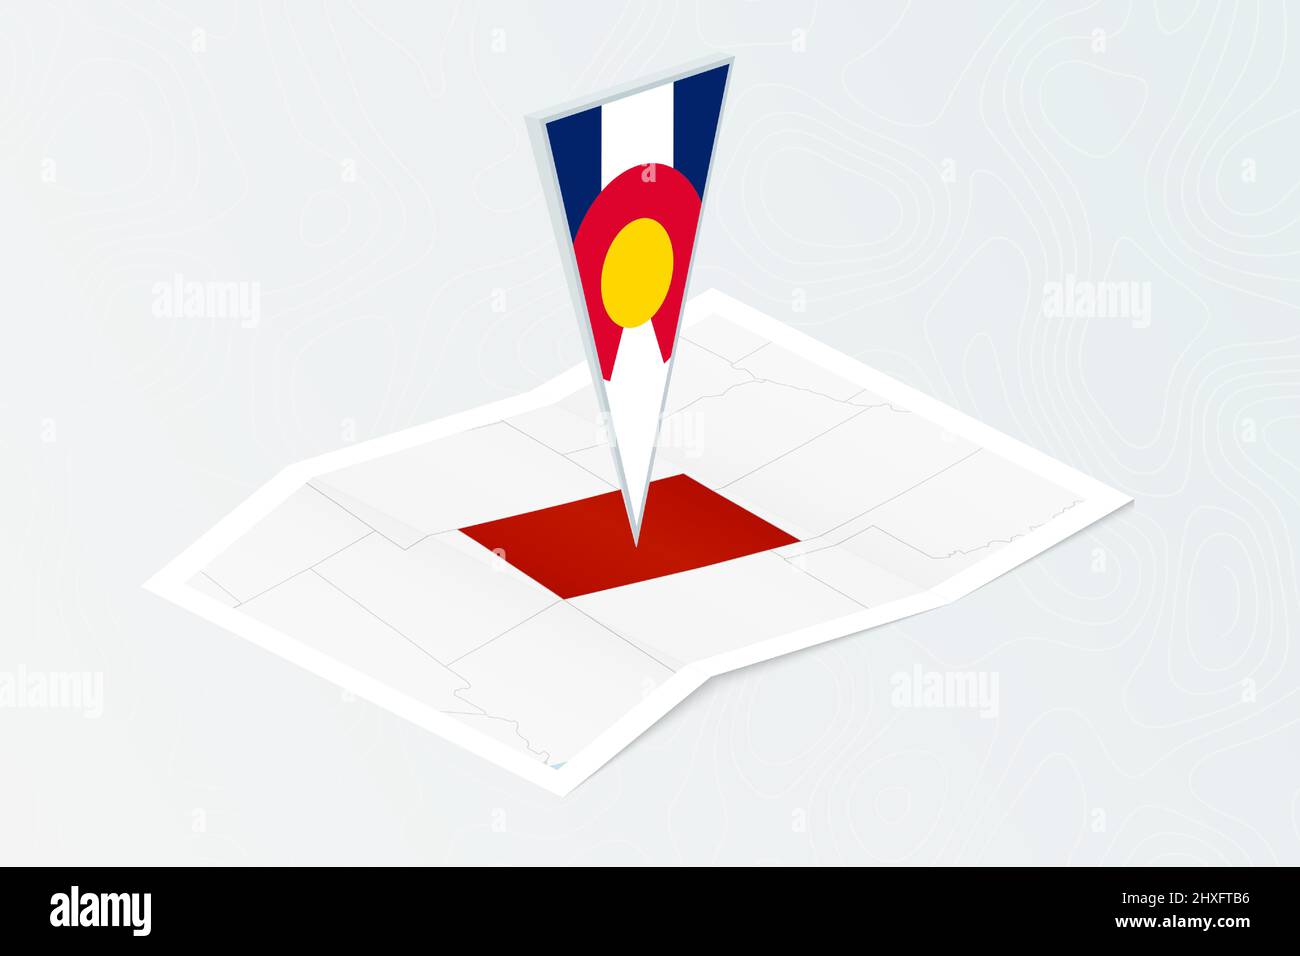 Isometrische Papierkarte von Colorado mit dreieckiger Flagge Colorados im isometrischen Stil. Karte auf topografischem Hintergrund. Vektorgrafik. Stock Vektor